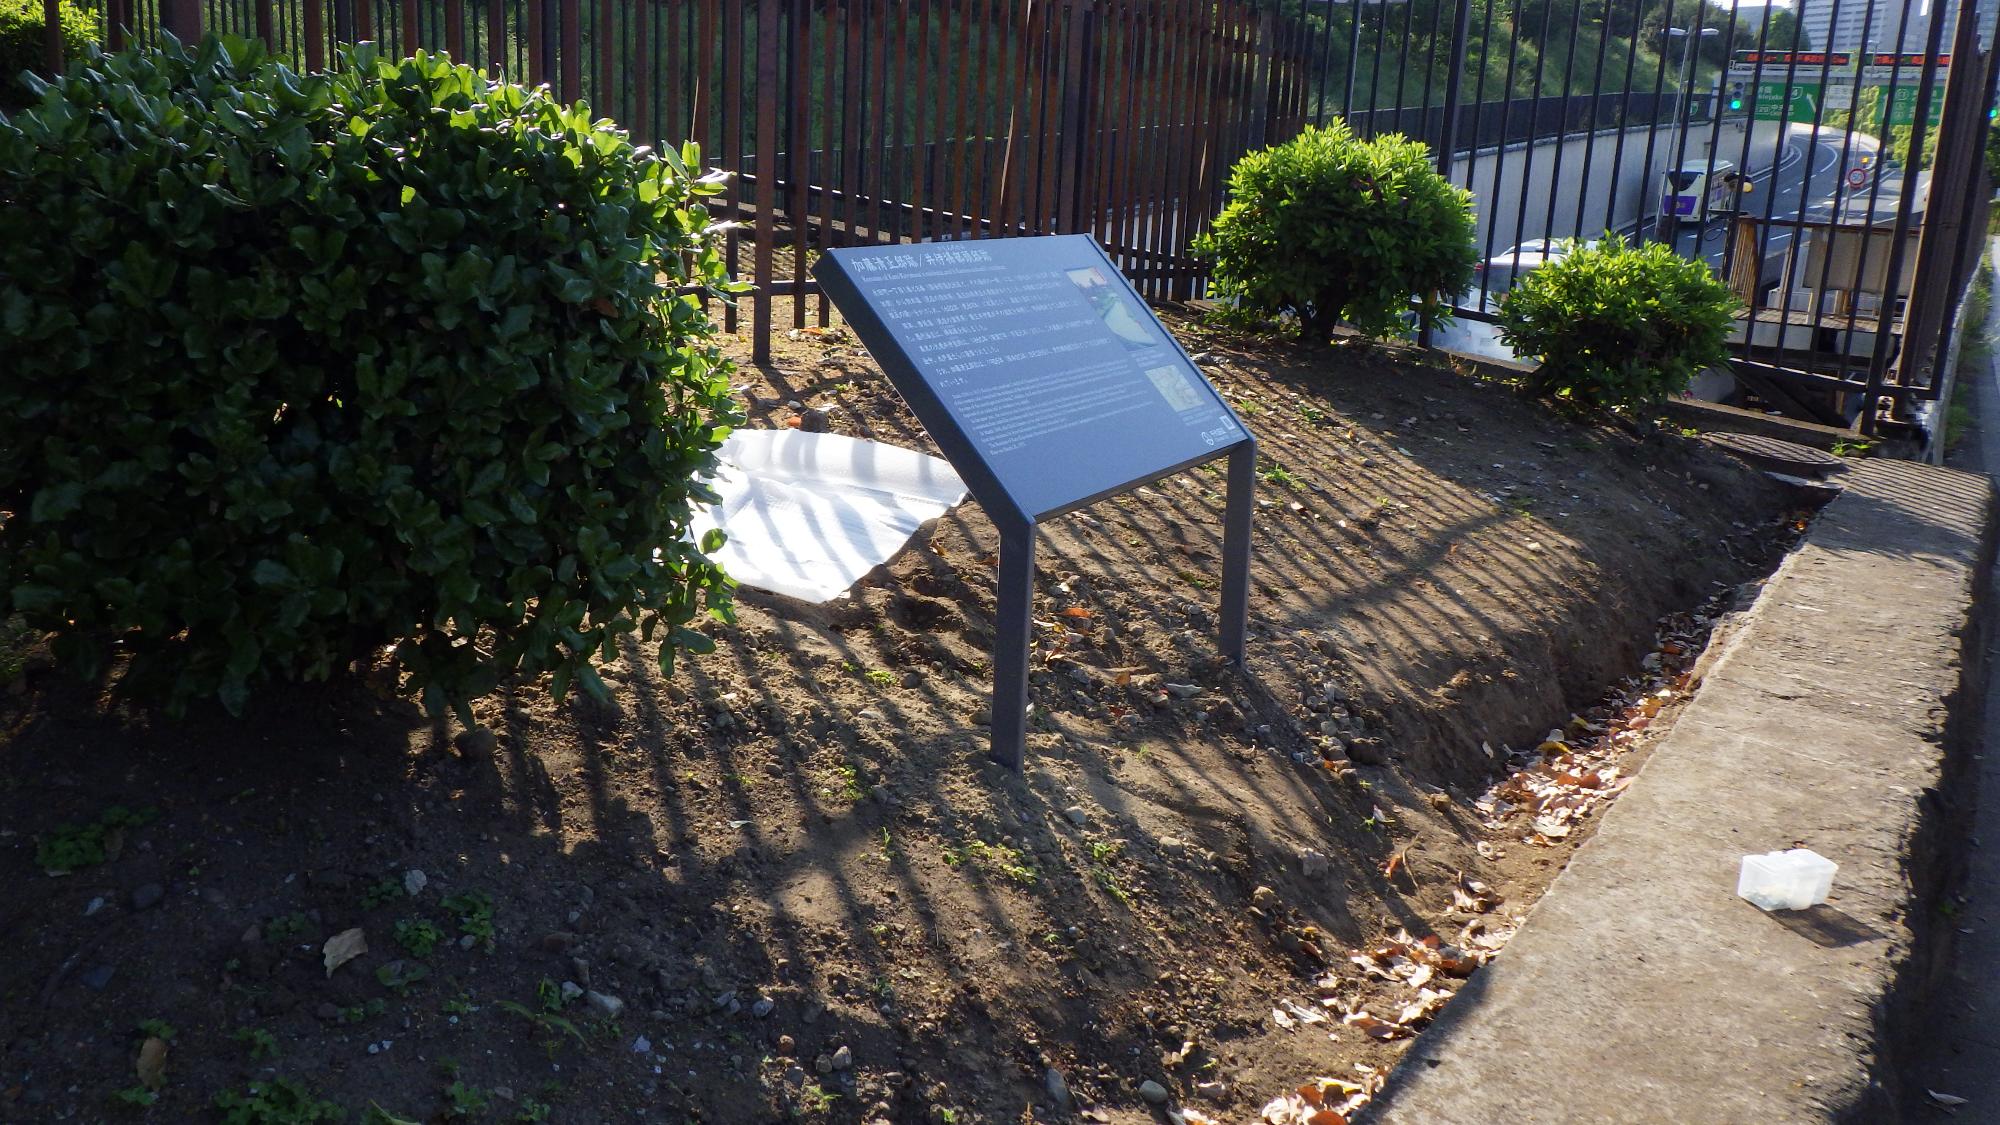 公園西側の一角に設置された加藤清正邸/井伊掃部頭邸跡の説明板に日が差している写真